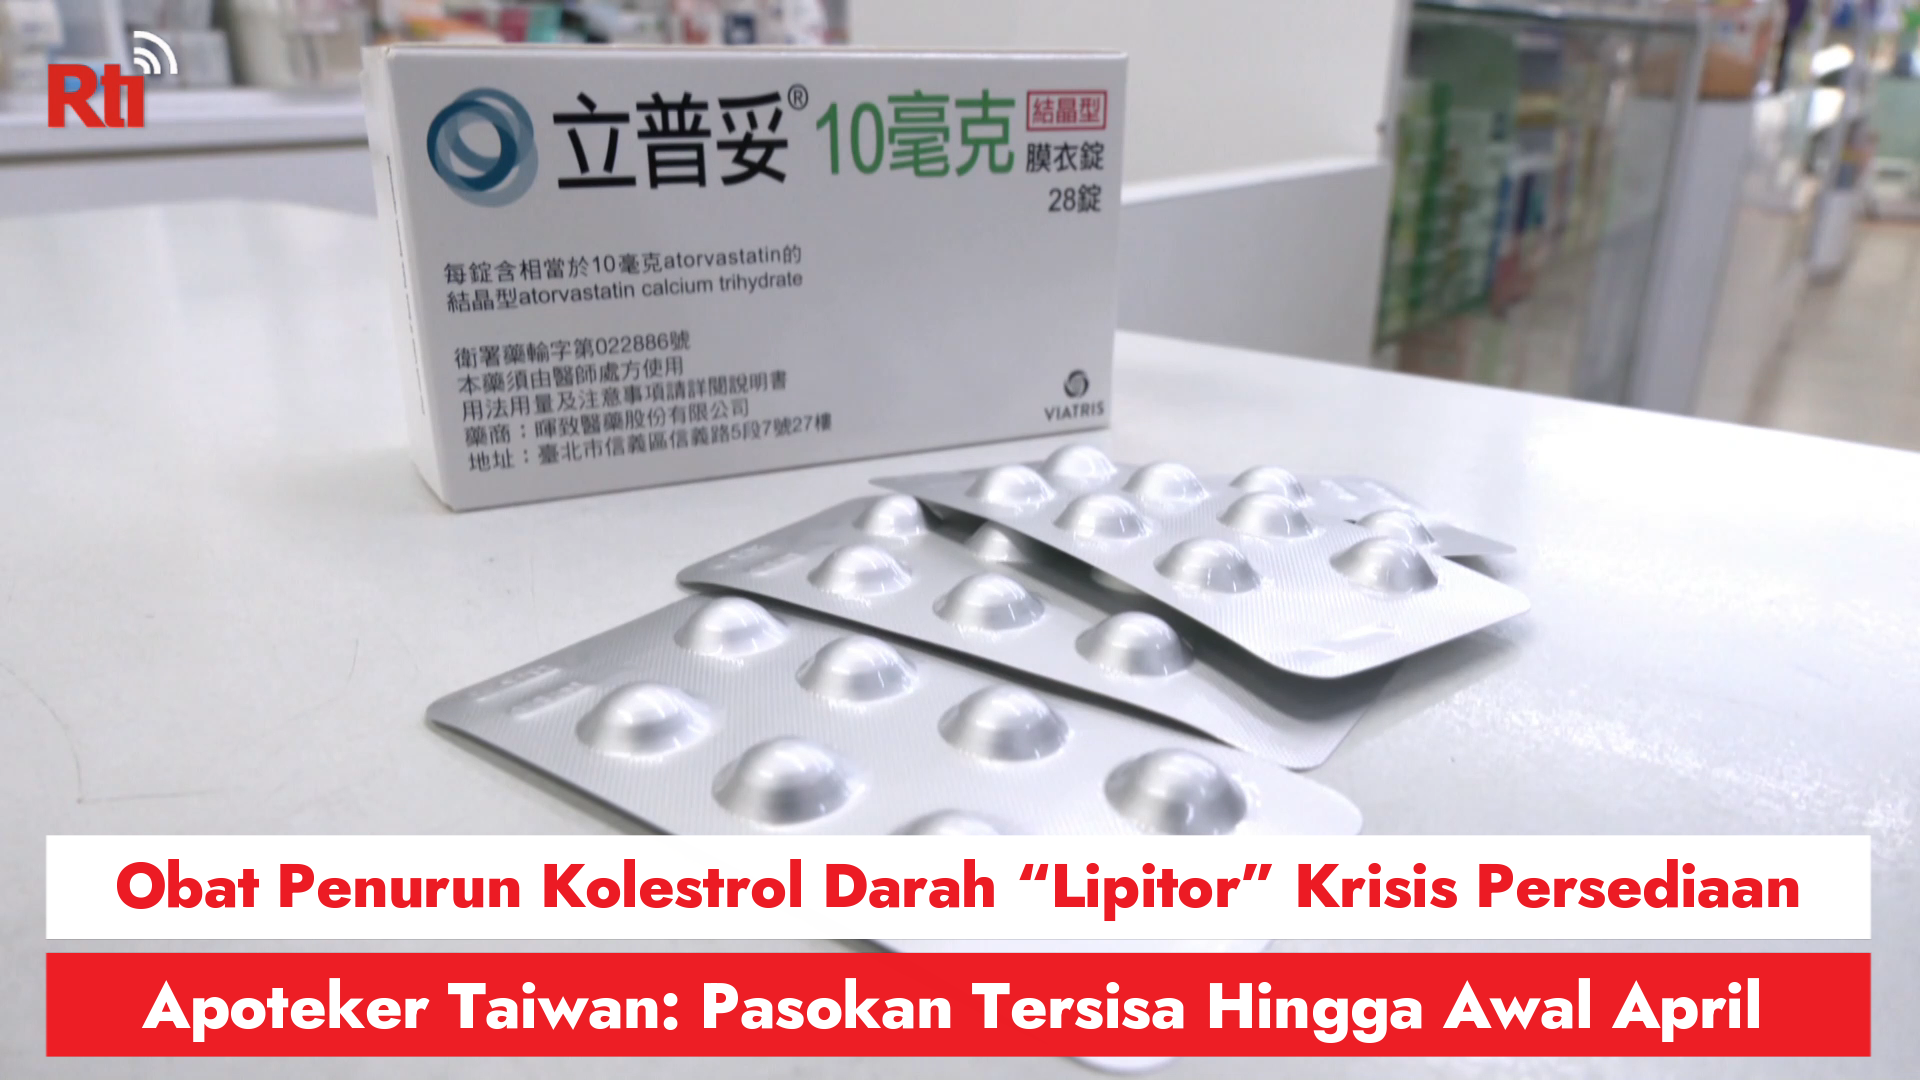 Obat Penurun Kolestrol Darah “Lipitor” Krisis Persediaan, Apoteker Taiwan: Pasokan Tersisa Hingga Awal April